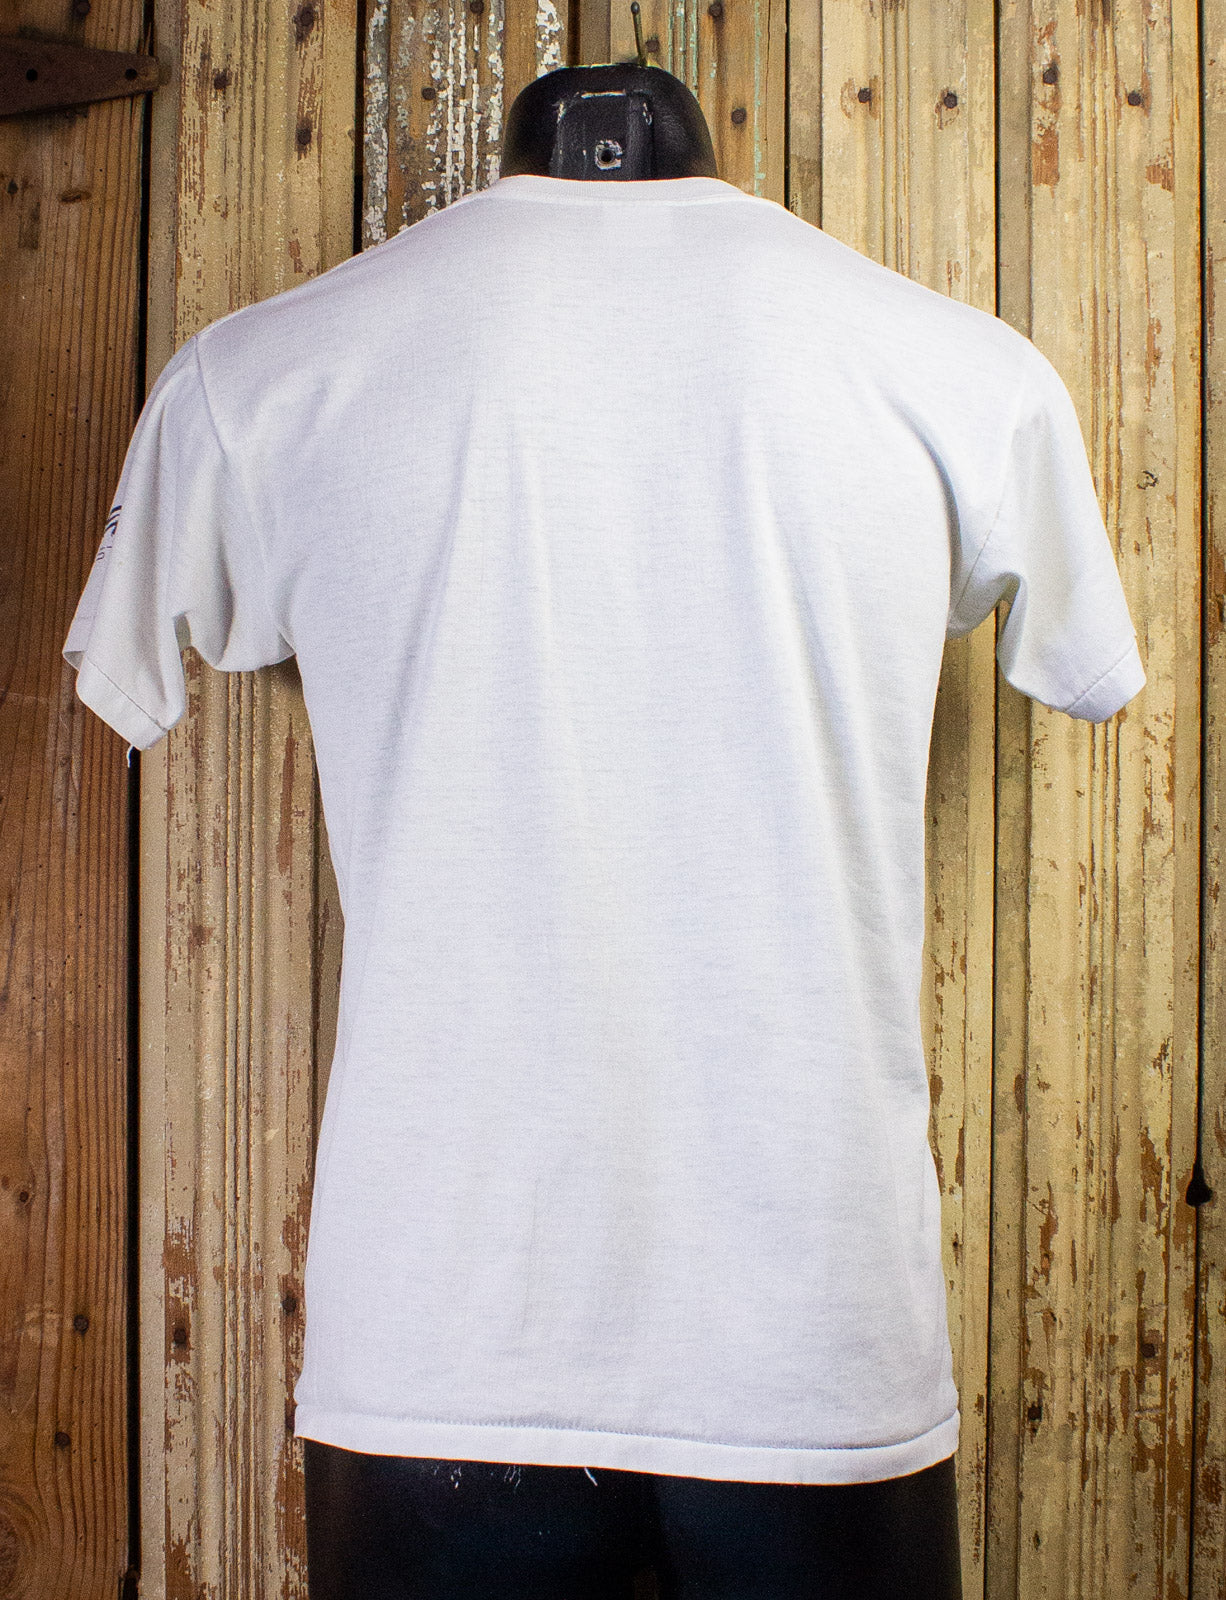 Vintage Power Club Graphic T Shirt 80s White Medium